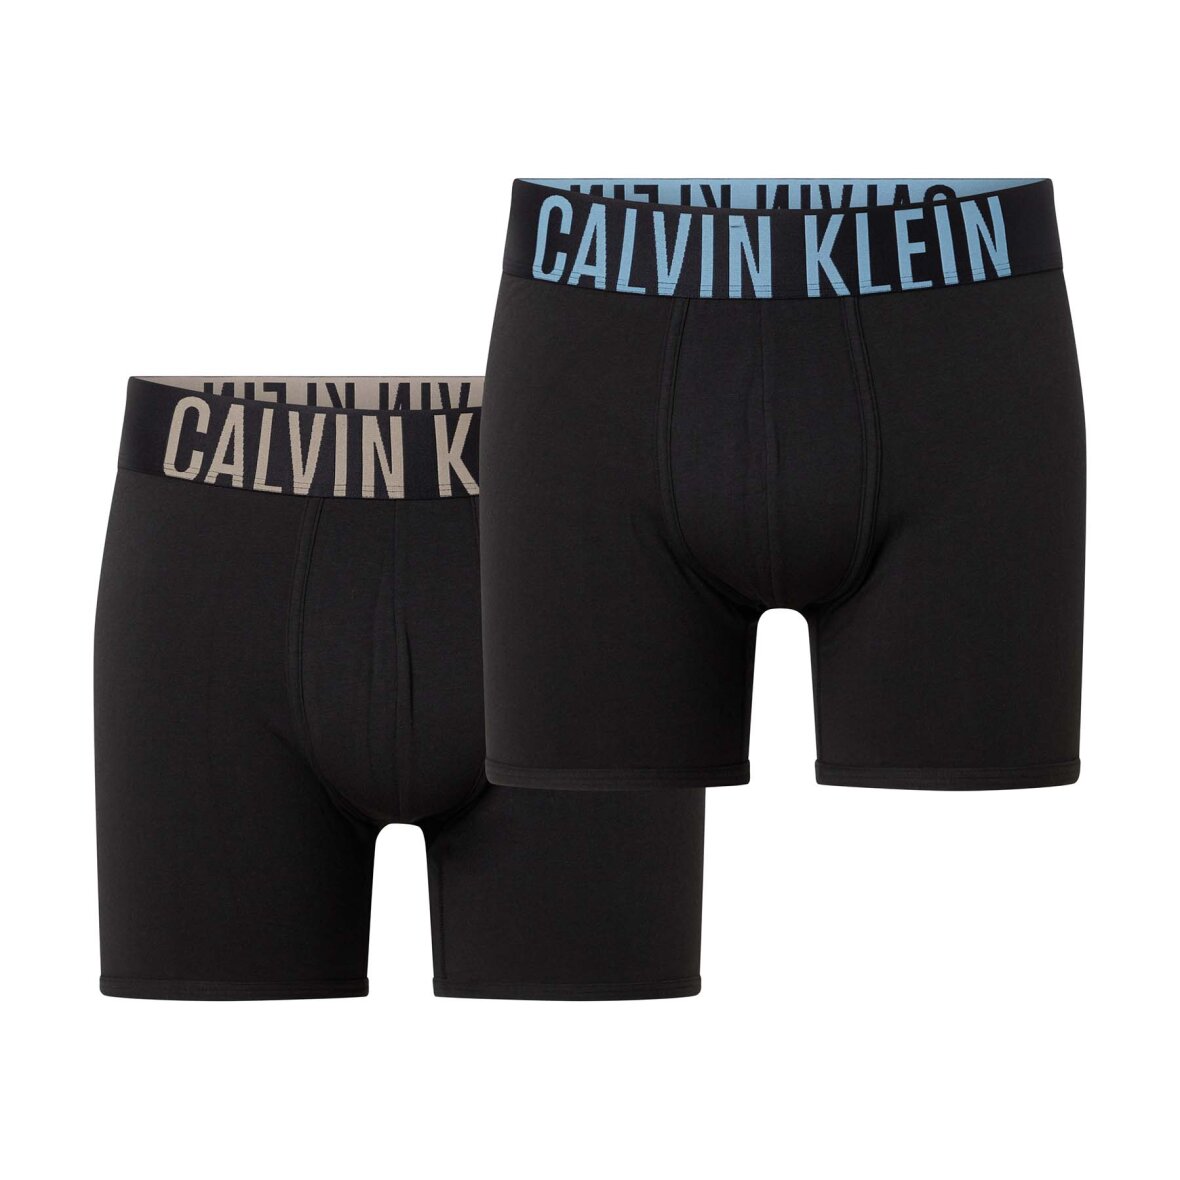 Boxer brief fra Calvin Underwear - Køb leveret i morgen!